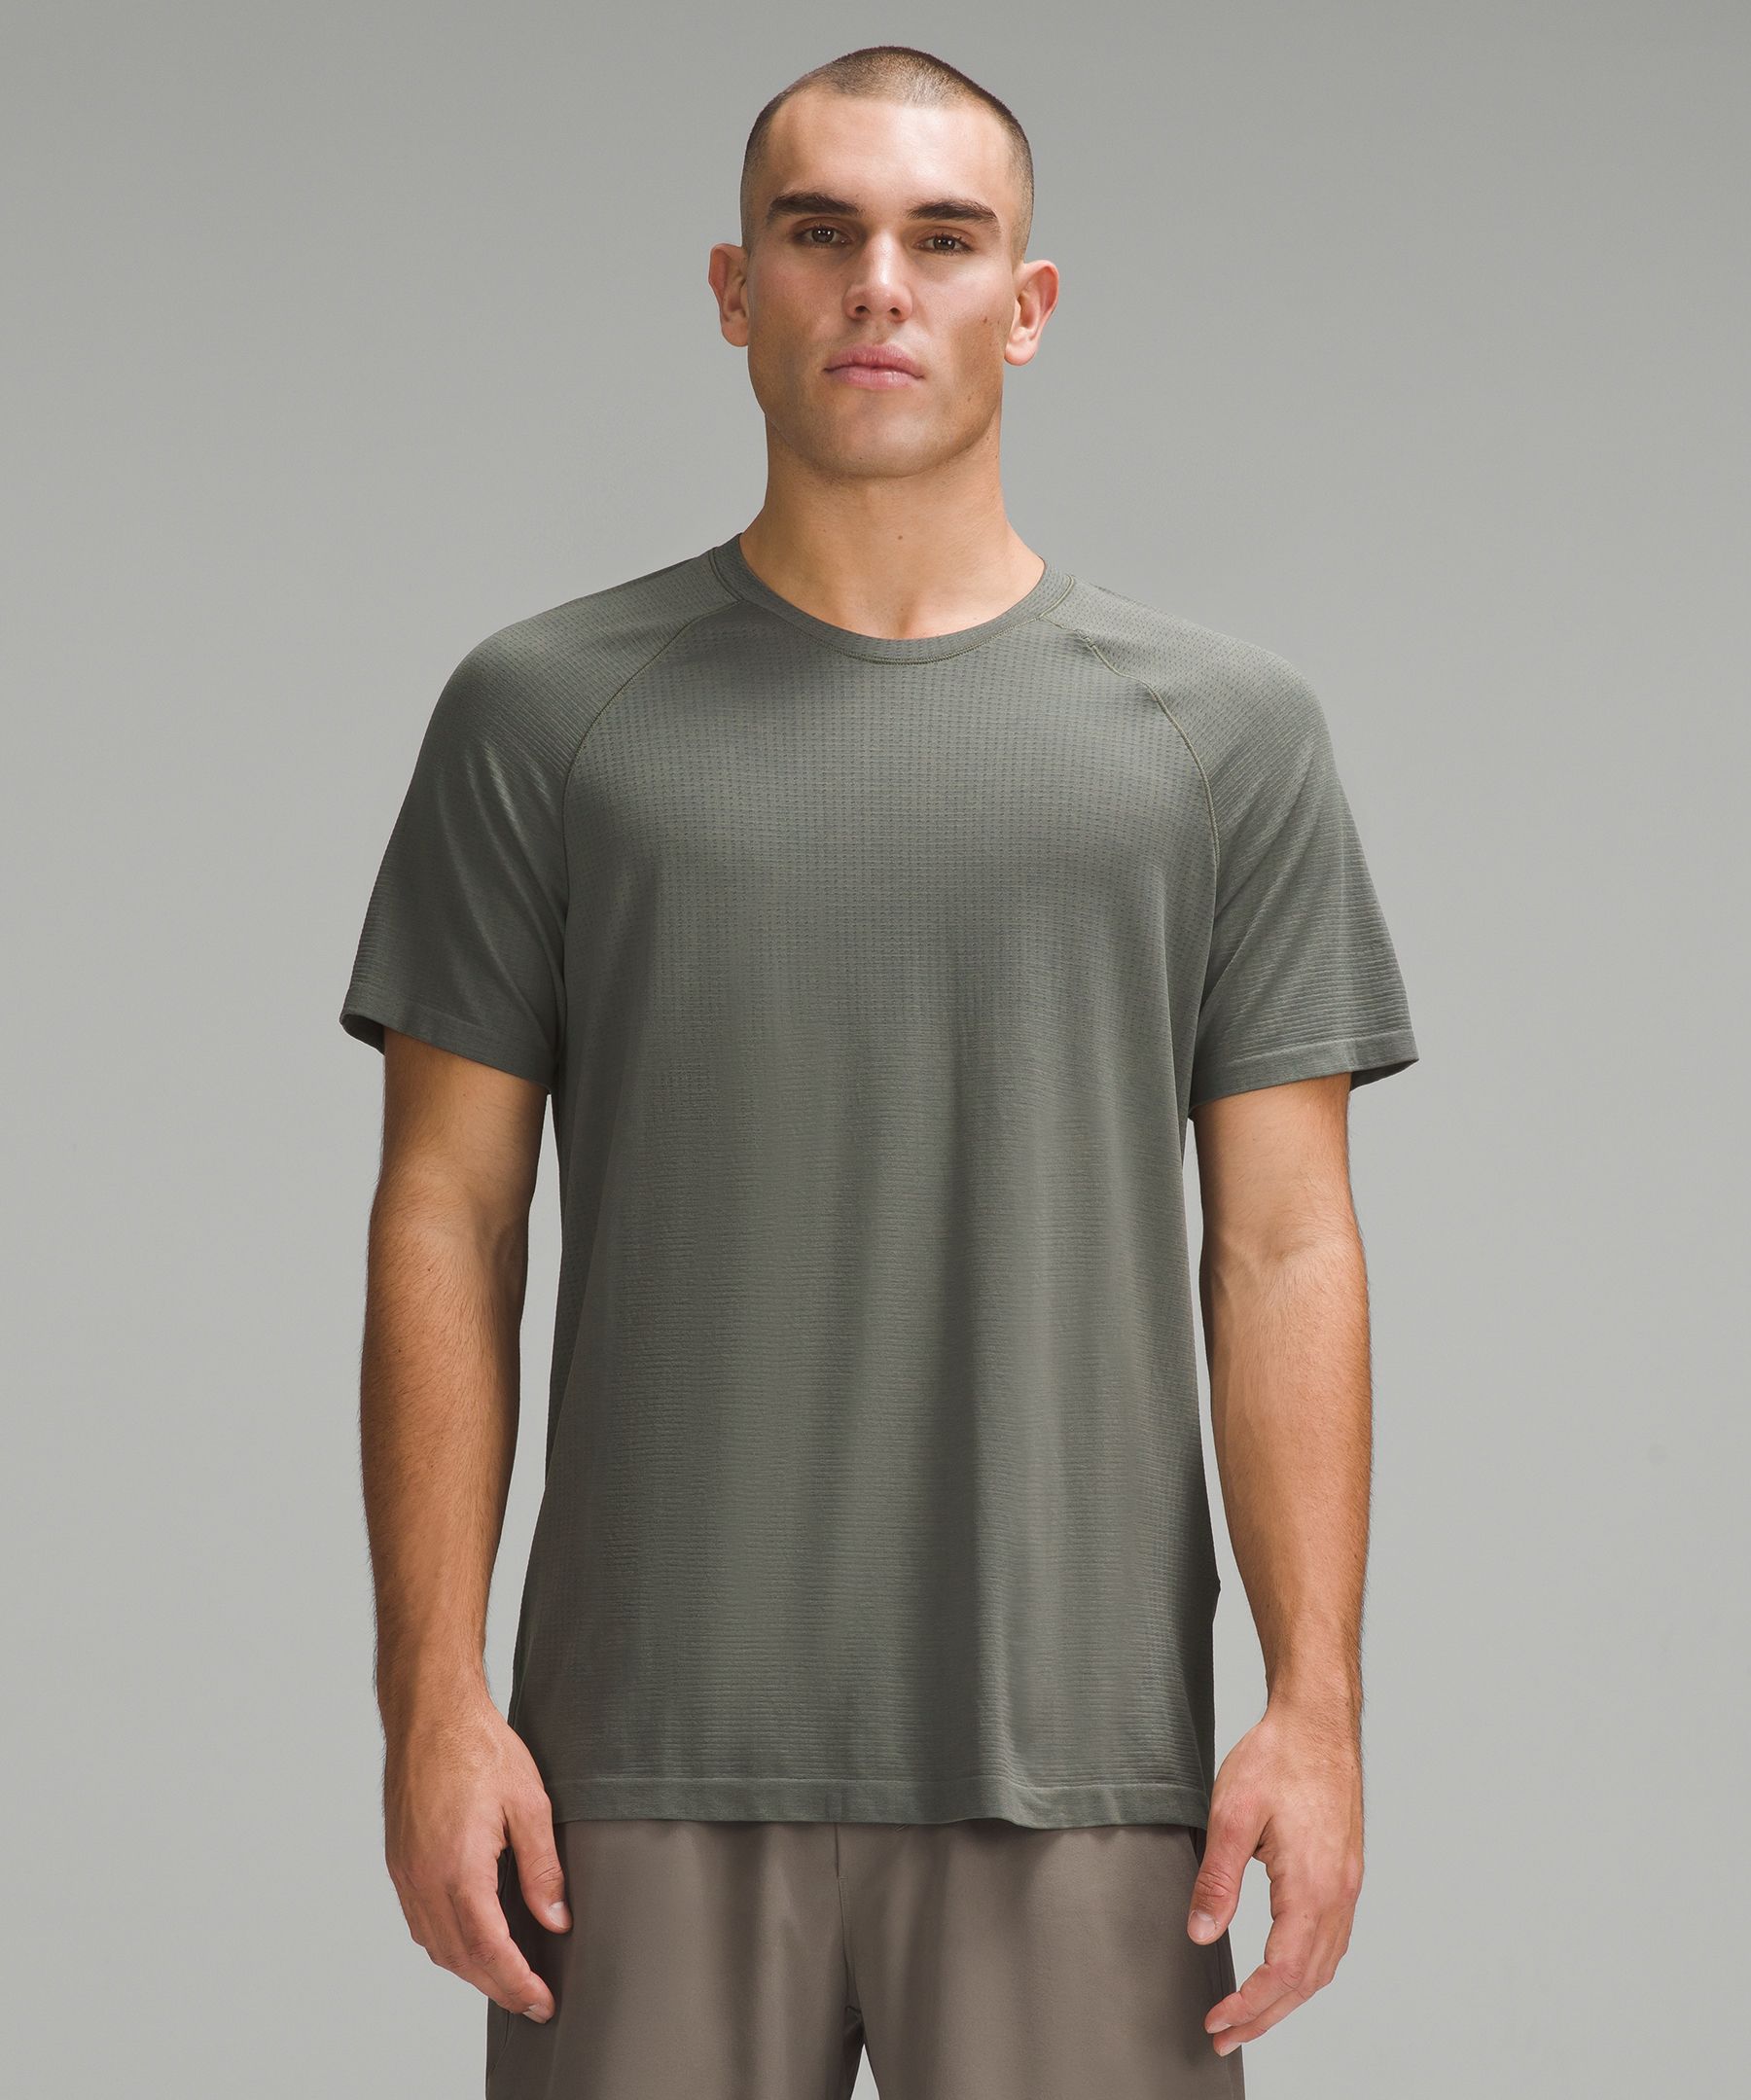 Lululemon Metal Vent Tech Short Sleeve Shirt 2.0, Golf Equipment: Clubs,  Balls, Bags